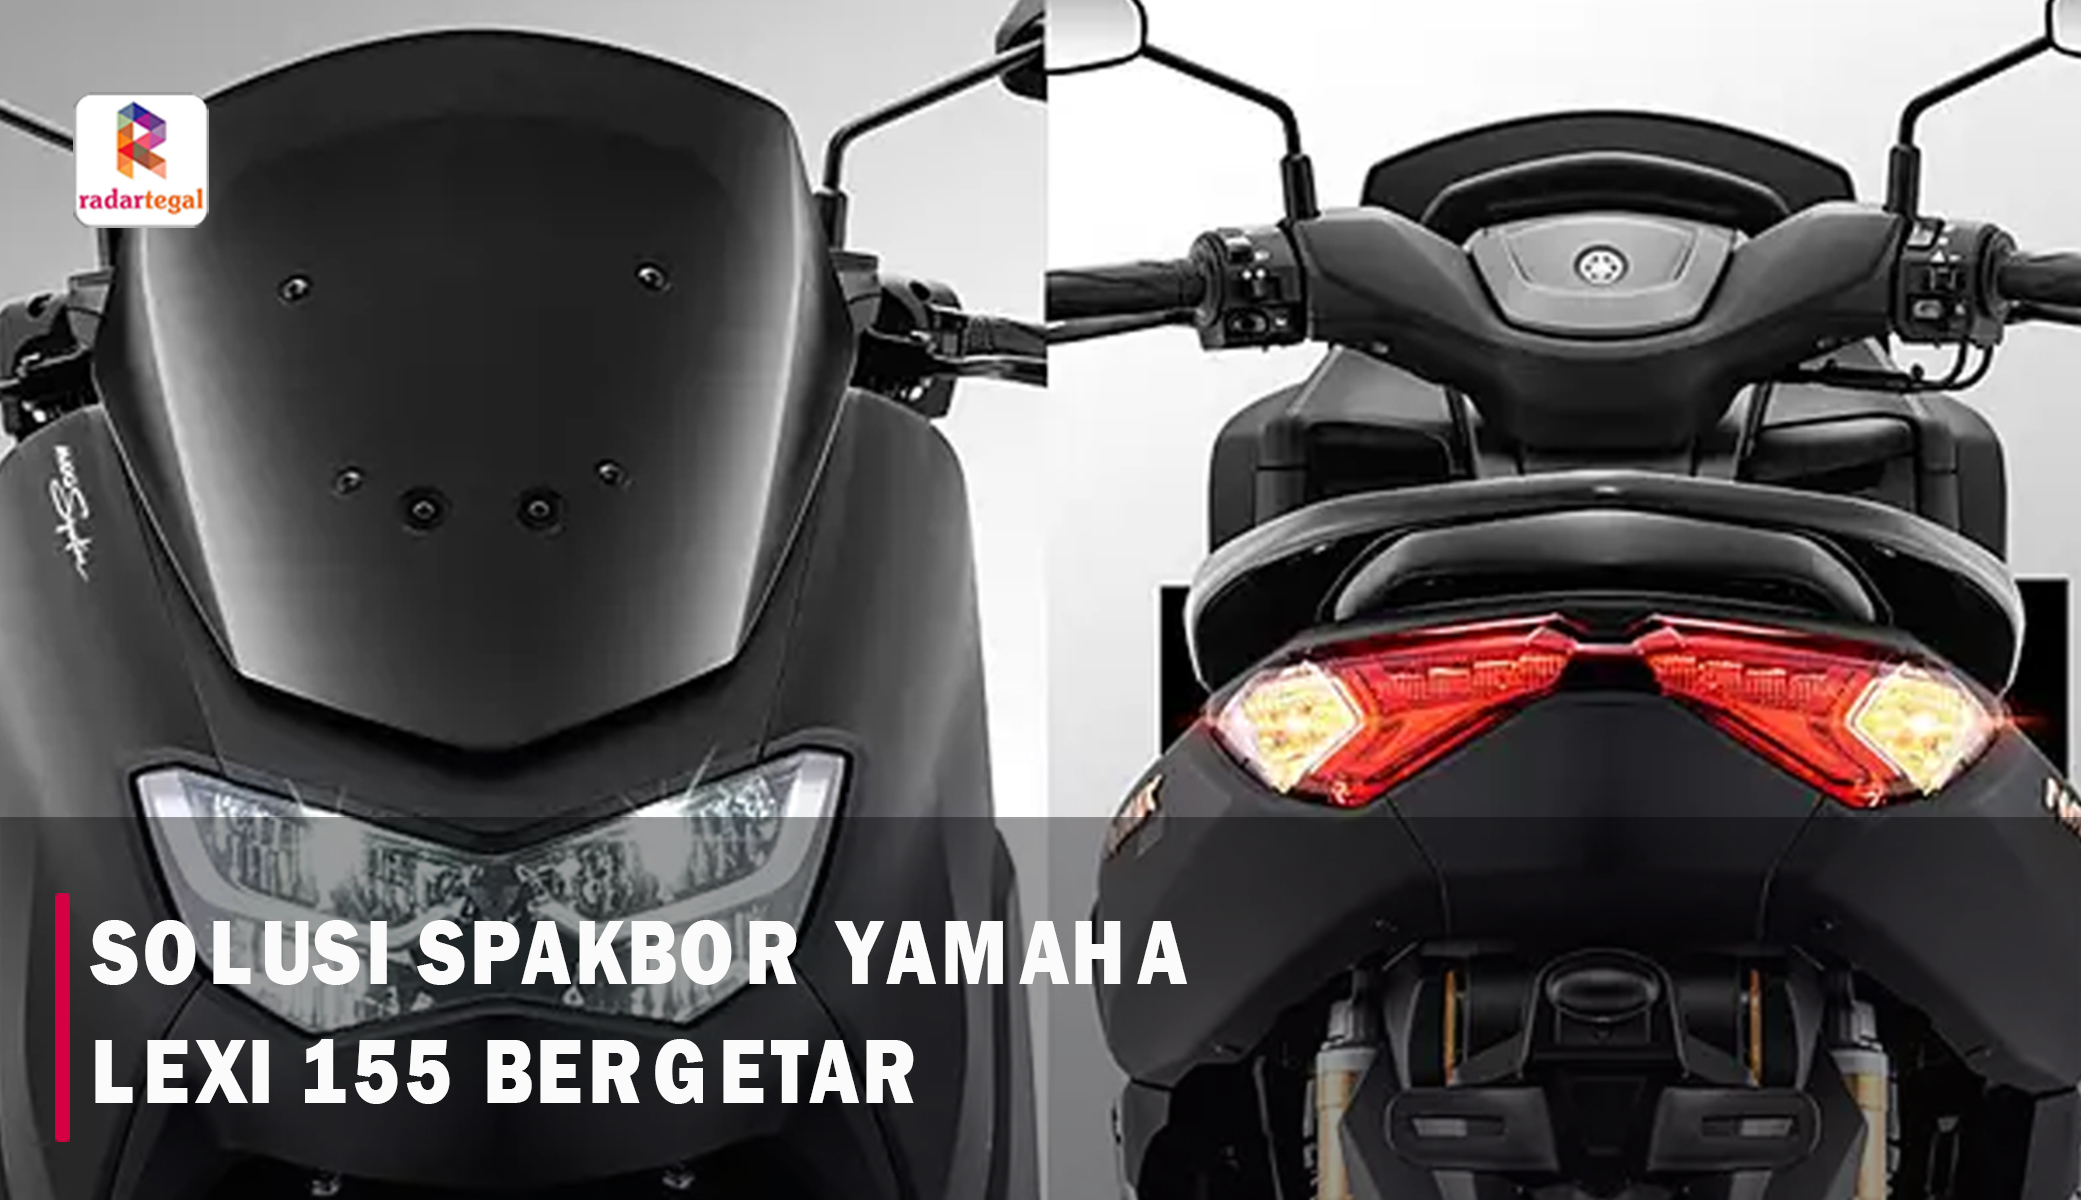 Cara Mengatasi Spakbor Yamaha Lexi LX 155 Bergetar, Cukup Lakukan Ini! Dijamin Clear